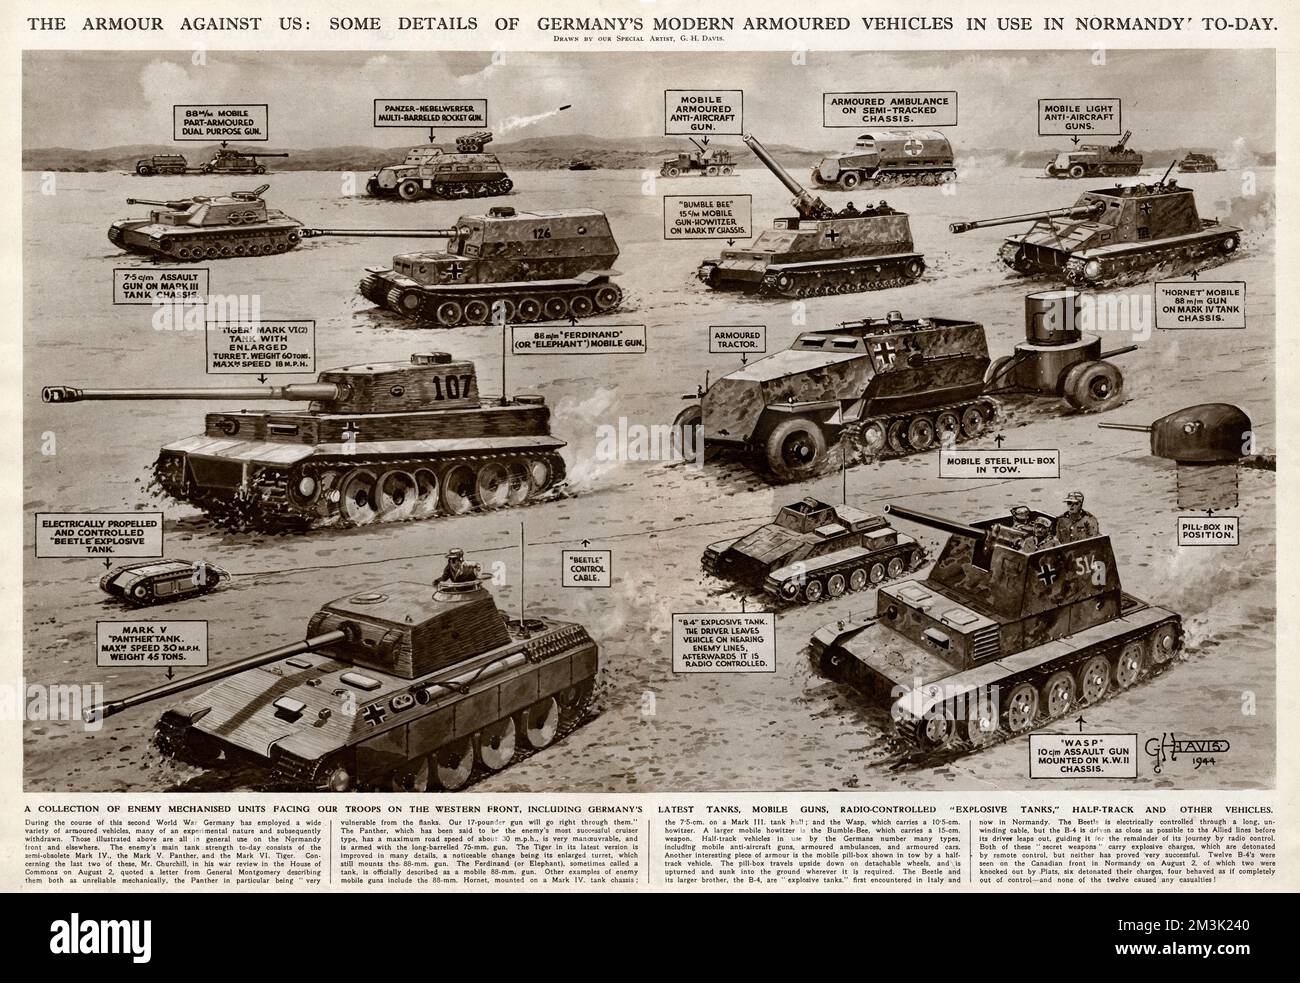 Deutsche moderne gepanzerte Fahrzeuge, die während der Schlacht um die Normandie im Zweiten Weltkrieg eingesetzt wurden. Zu den abgebildeten Fahrzeugen gehören Panzer von Panther und Tiger (linker Vordergrund), zwei Sturmgewehre (eine Wasp), Panzerzerstörer von Elefanten und Hornissen, mehrere Flugabwehrfahrzeuge, ein gepanzerter Krankenwagen und zwei ferngesteuerte Sprengstofftanks (eine B4 und ein Käfer). Hinweis: Diese Fahrzeuge waren nur die, von denen die Alliierten wussten und über die Informationen zu dieser Zeit veröffentlicht wurden. 1944 Stockfoto